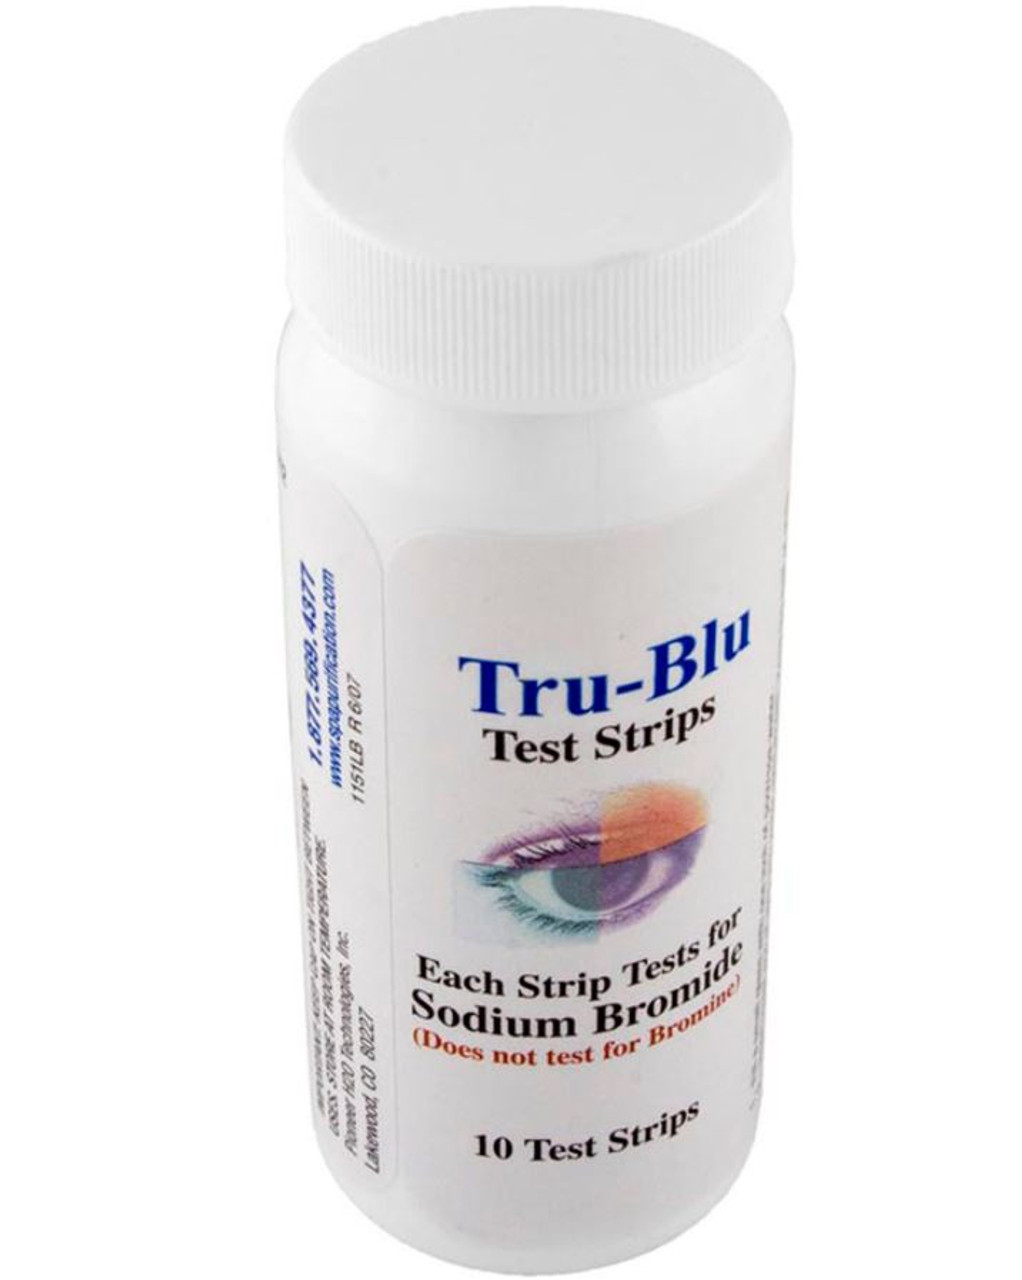 Tru Blu Test Strips Sodium Bromide Genesis Isis Pioneer True Blue BW-T600